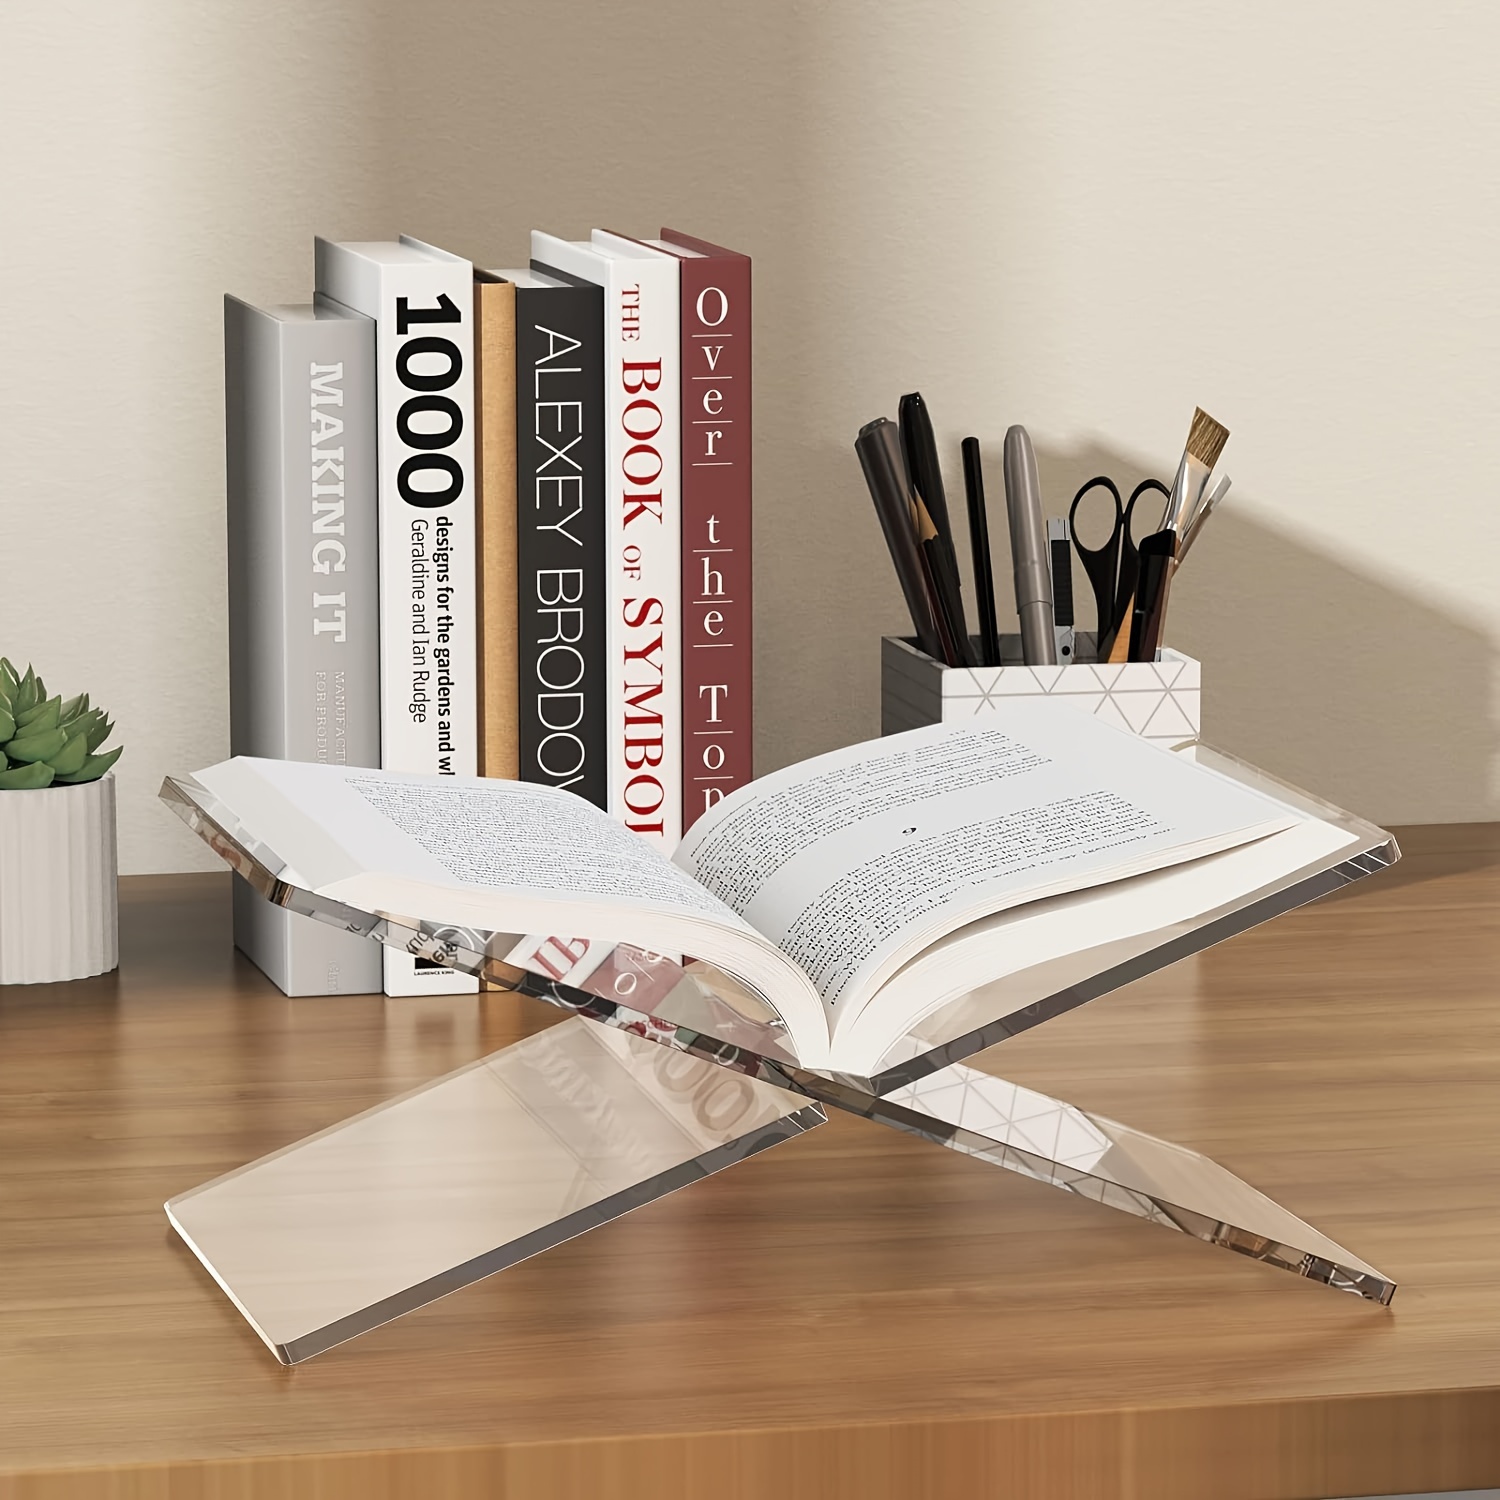 Metal Cookbook Stands Holders for Kitchen Reading Rest Bookstand Heavy Duty  Desktop Book Stands Document Holder Adjustable Book Holder Desk Book Stand